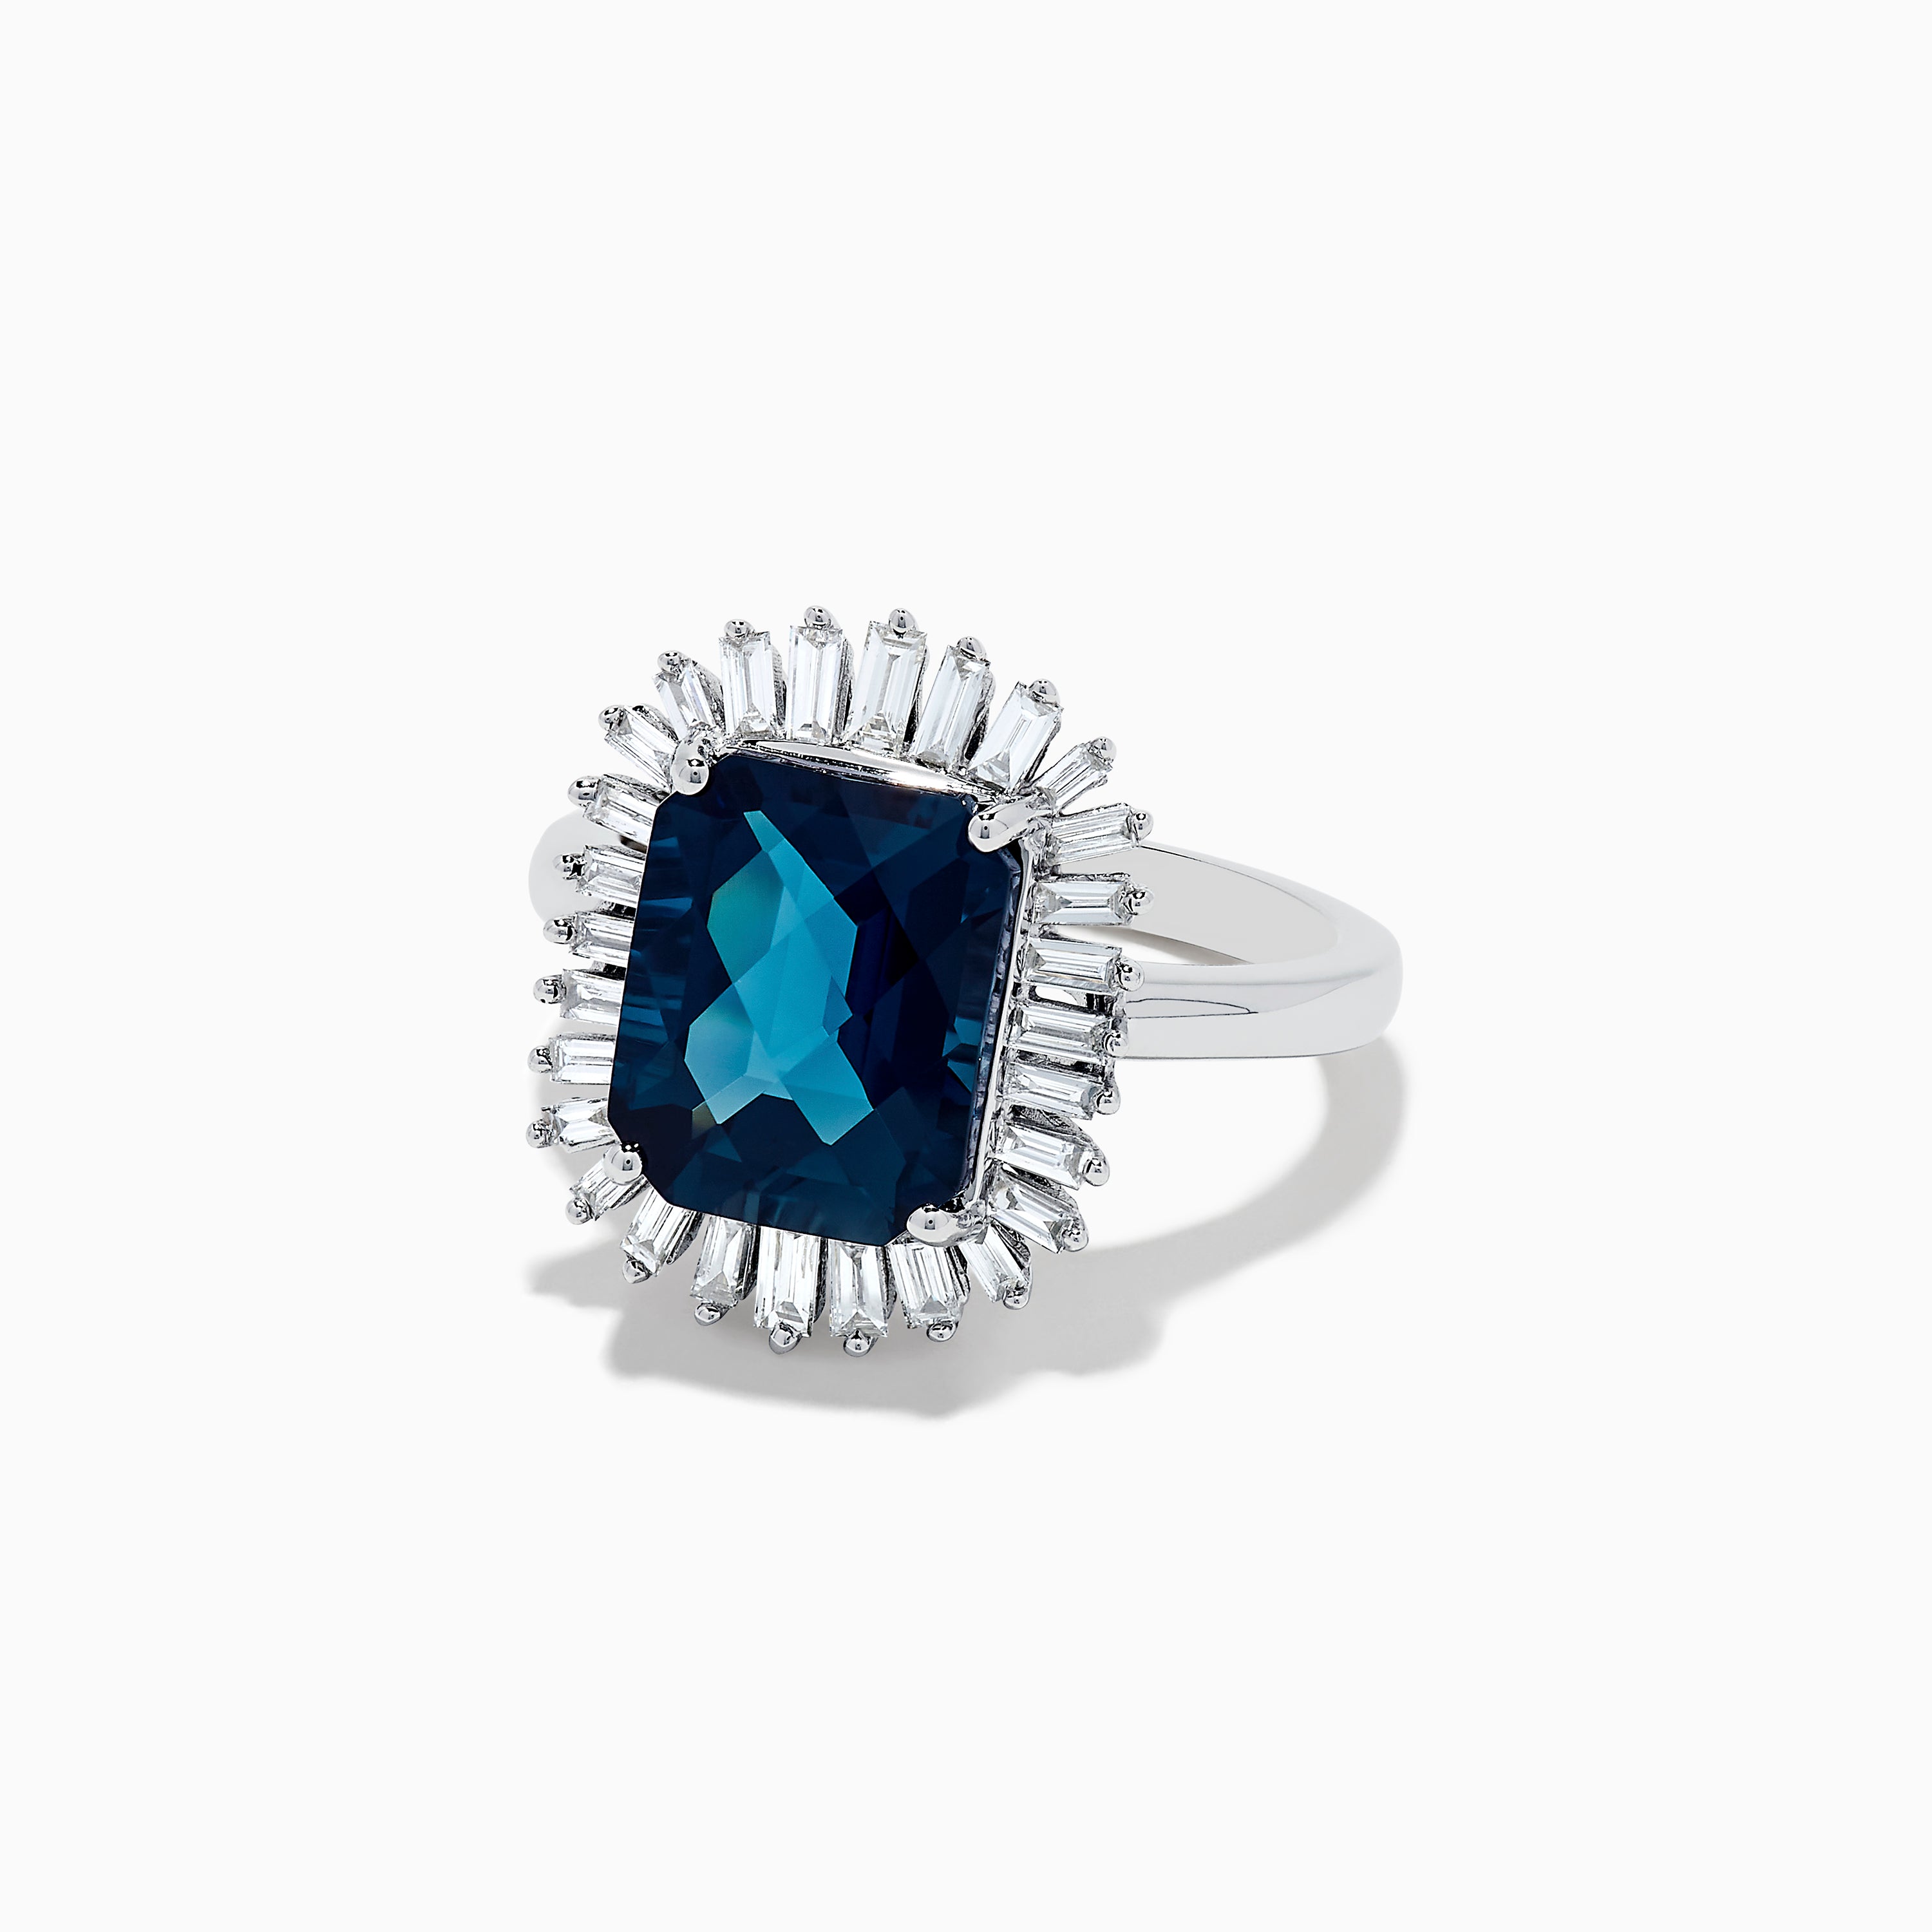 Effy Ocean Bleu 14K White Gold London Blue Topaz and Diamond Ring